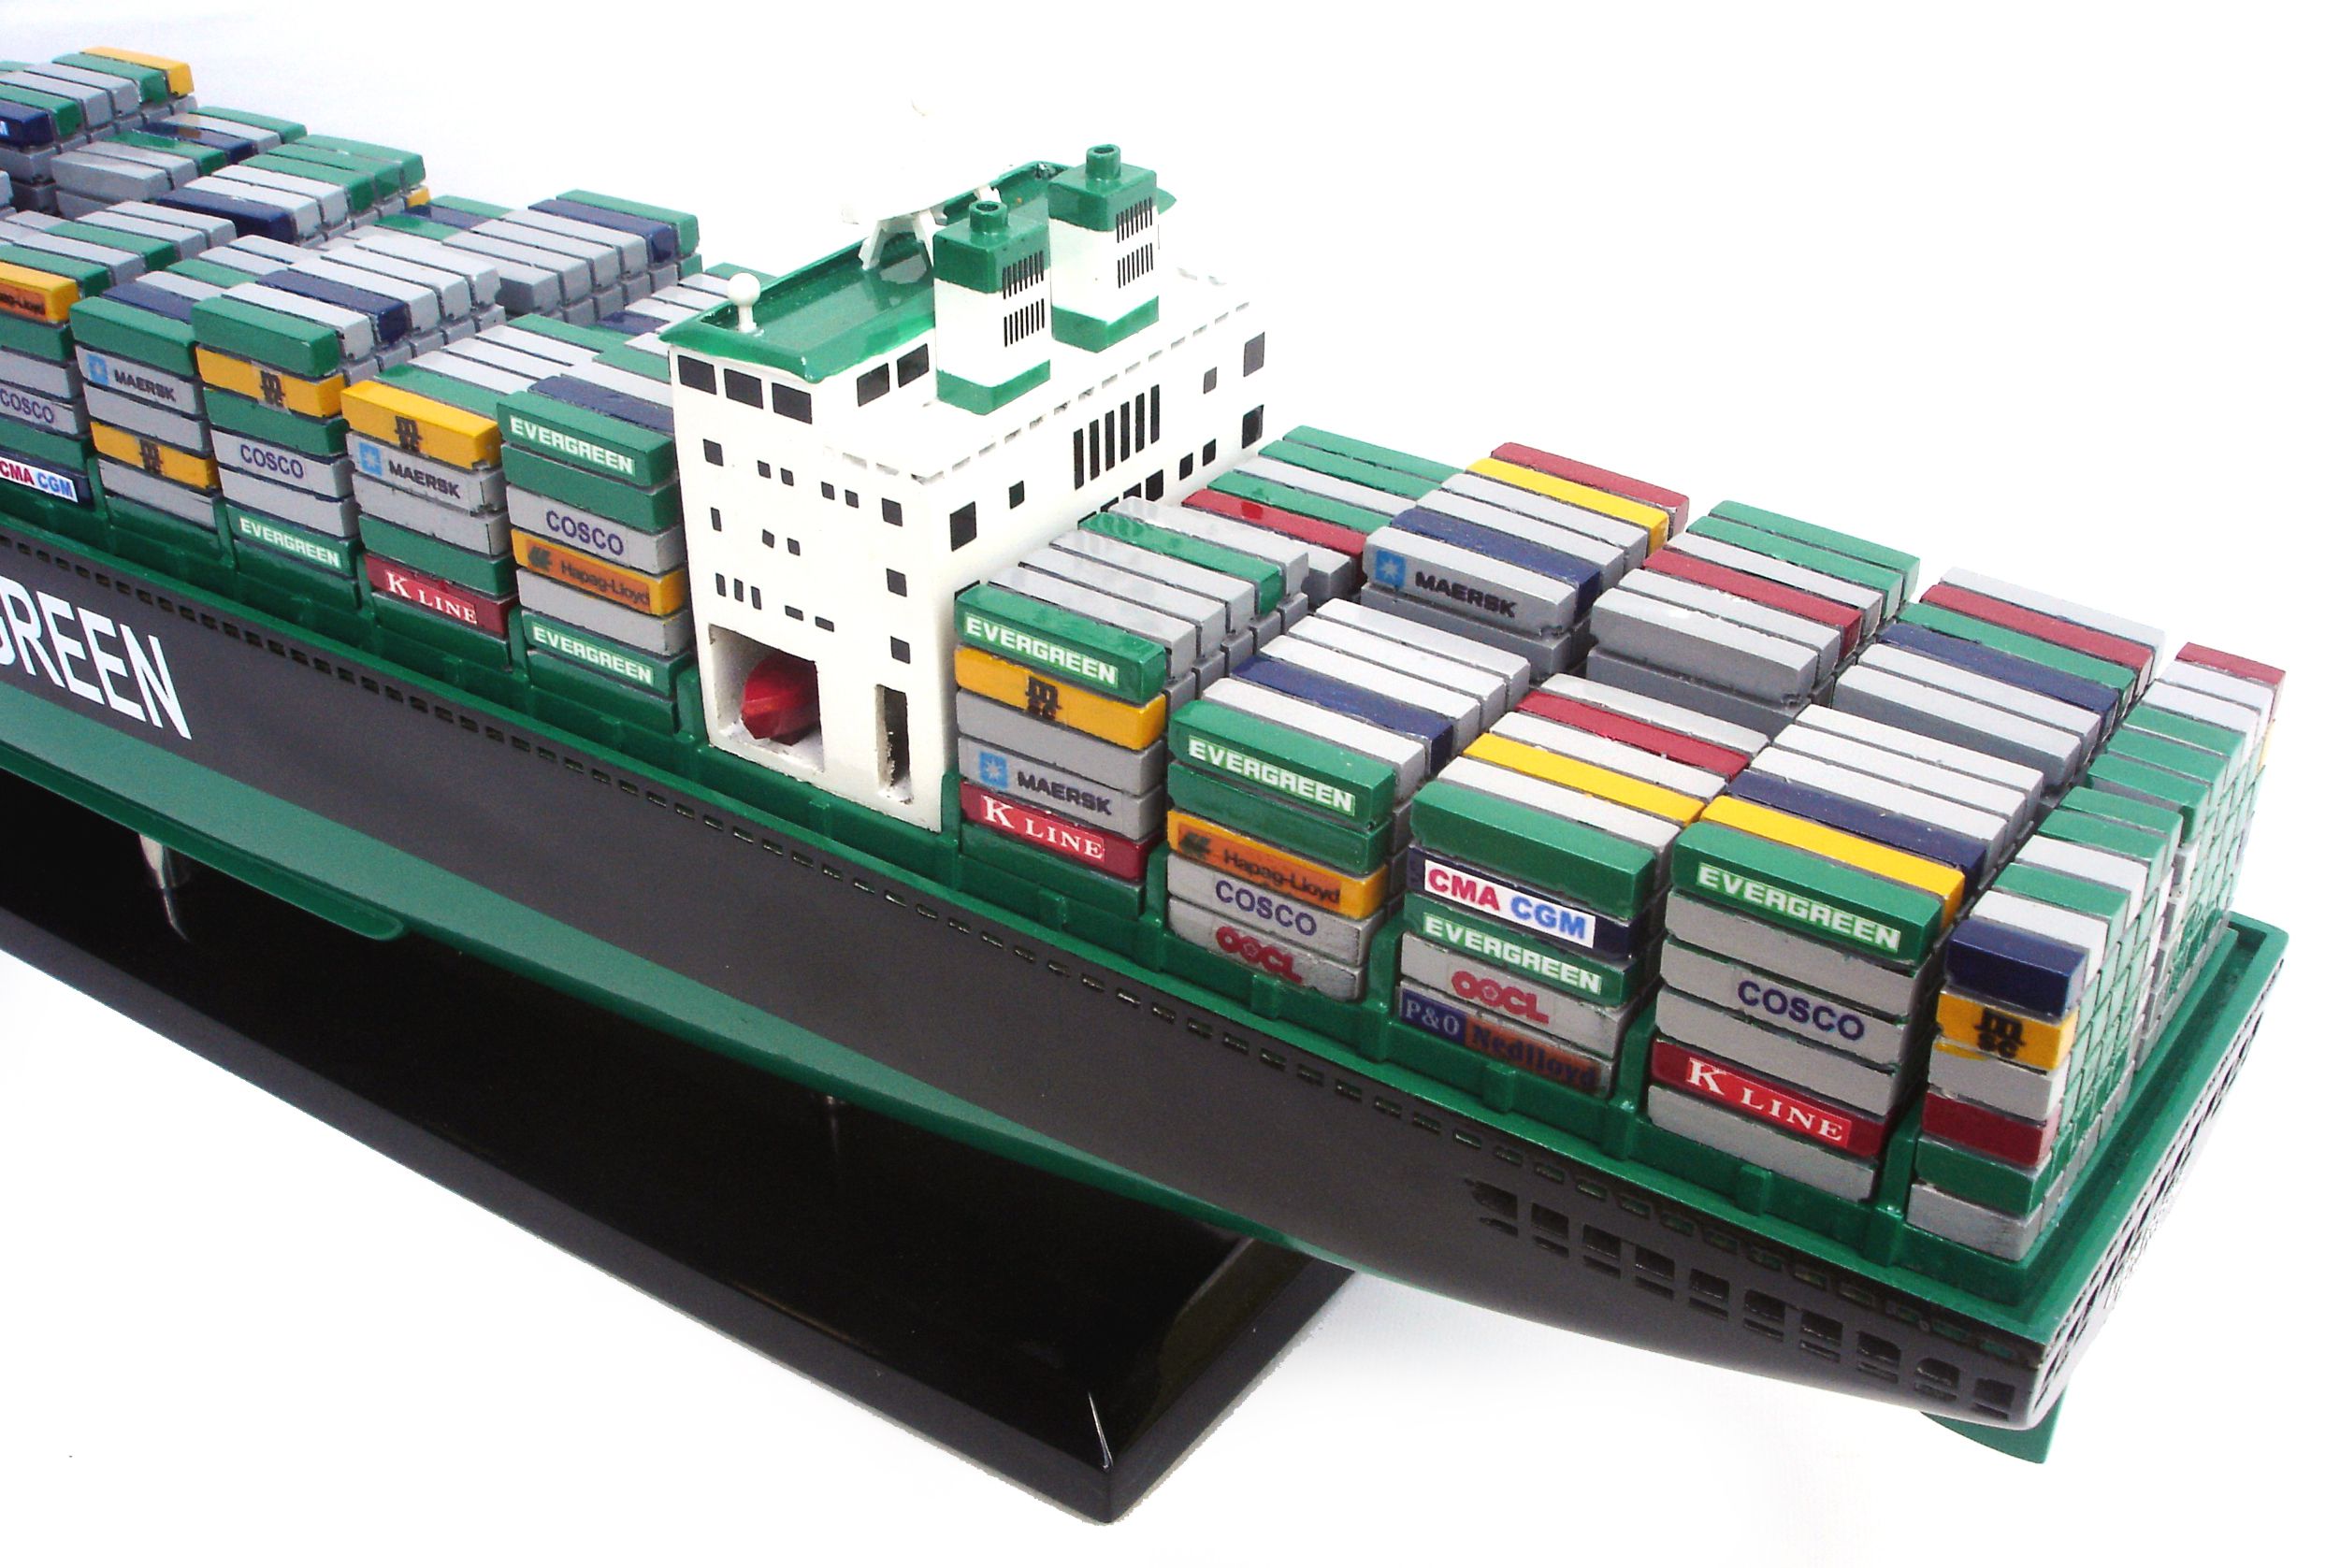 Evergreen Ship Model - GN